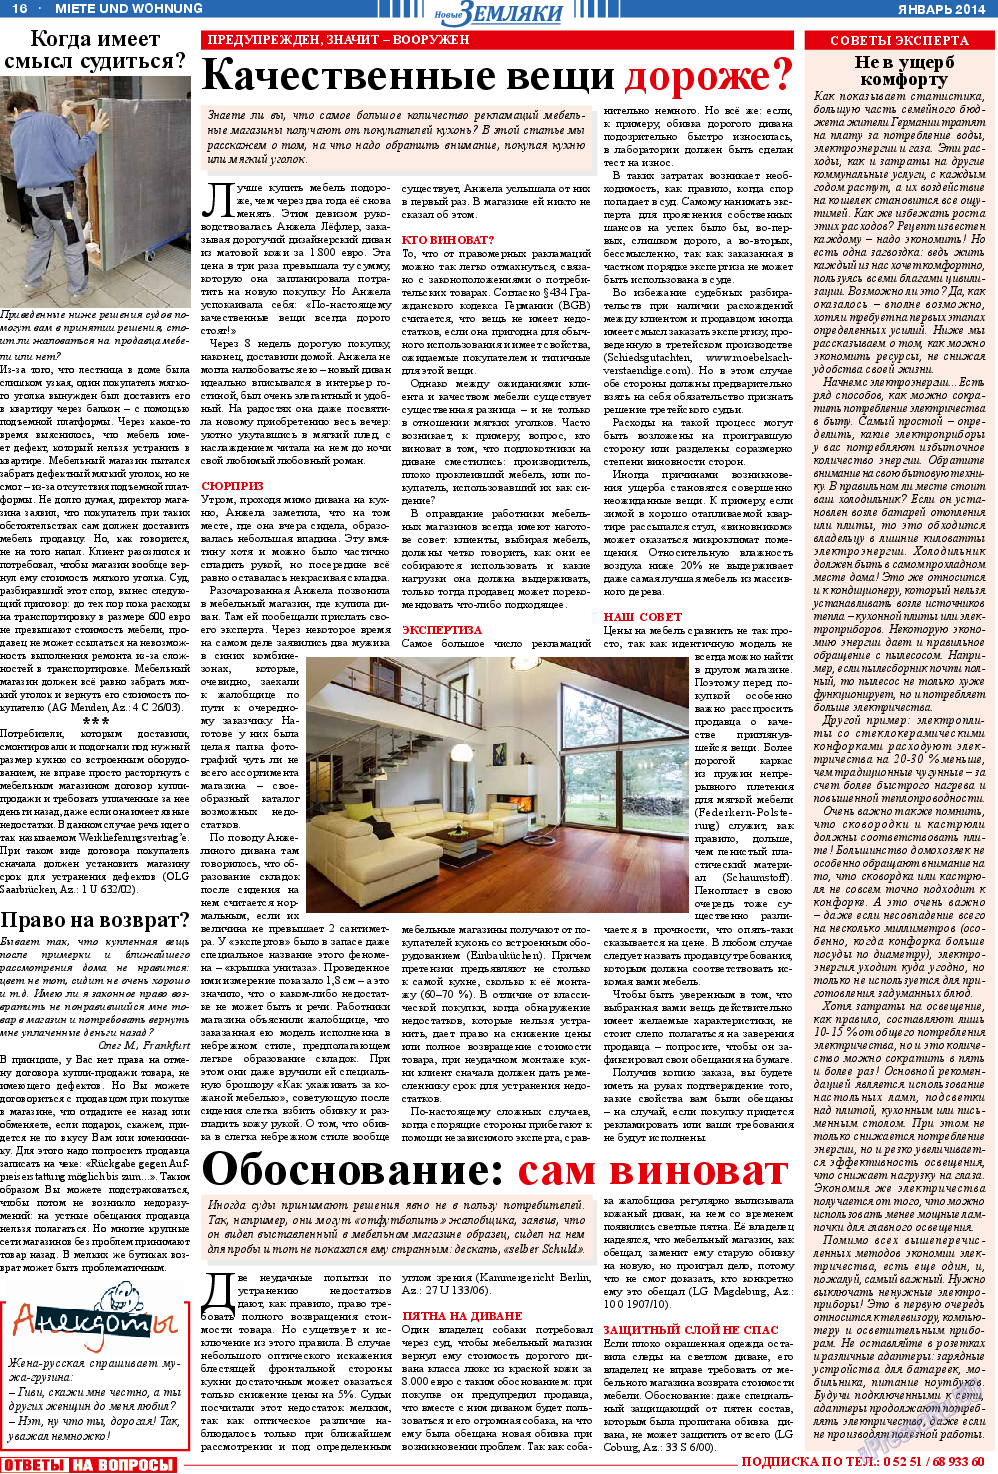 Новые Земляки (газета). 2014 год, номер 1, стр. 16